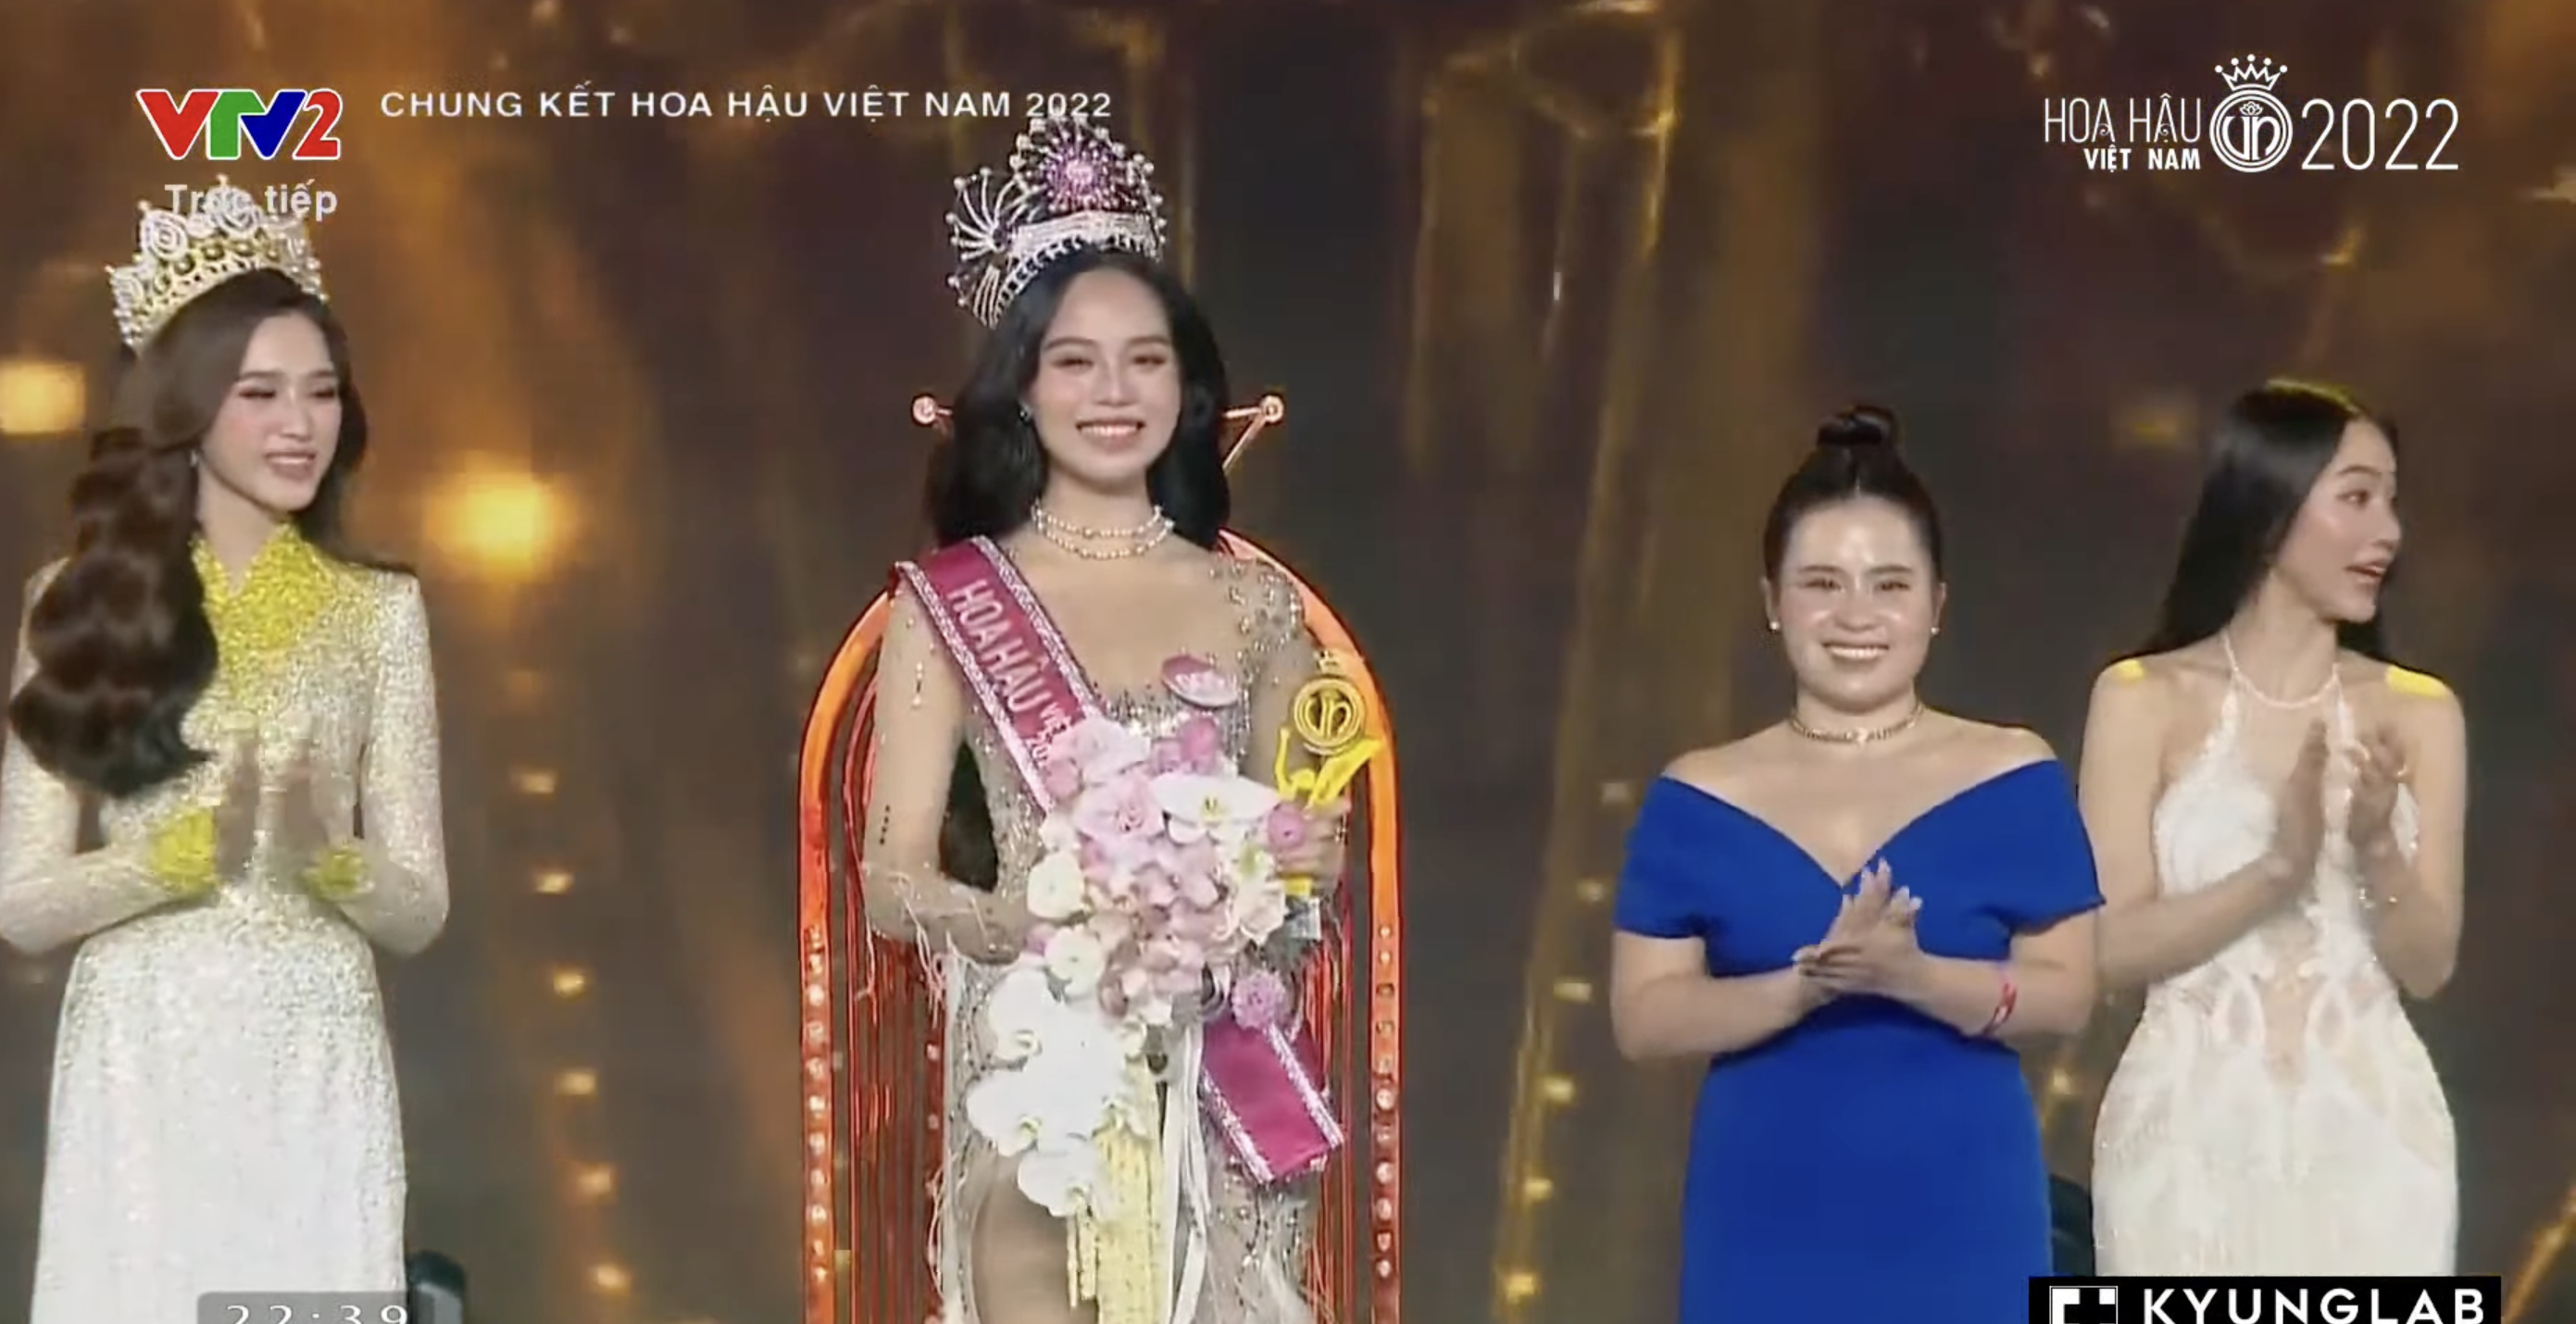 Chung kết Hoa hậu Việt Nam 2022: Tân Hoa hậu chính thức gọi tên Huỳnh Thị Thanh Thuỷ - 6